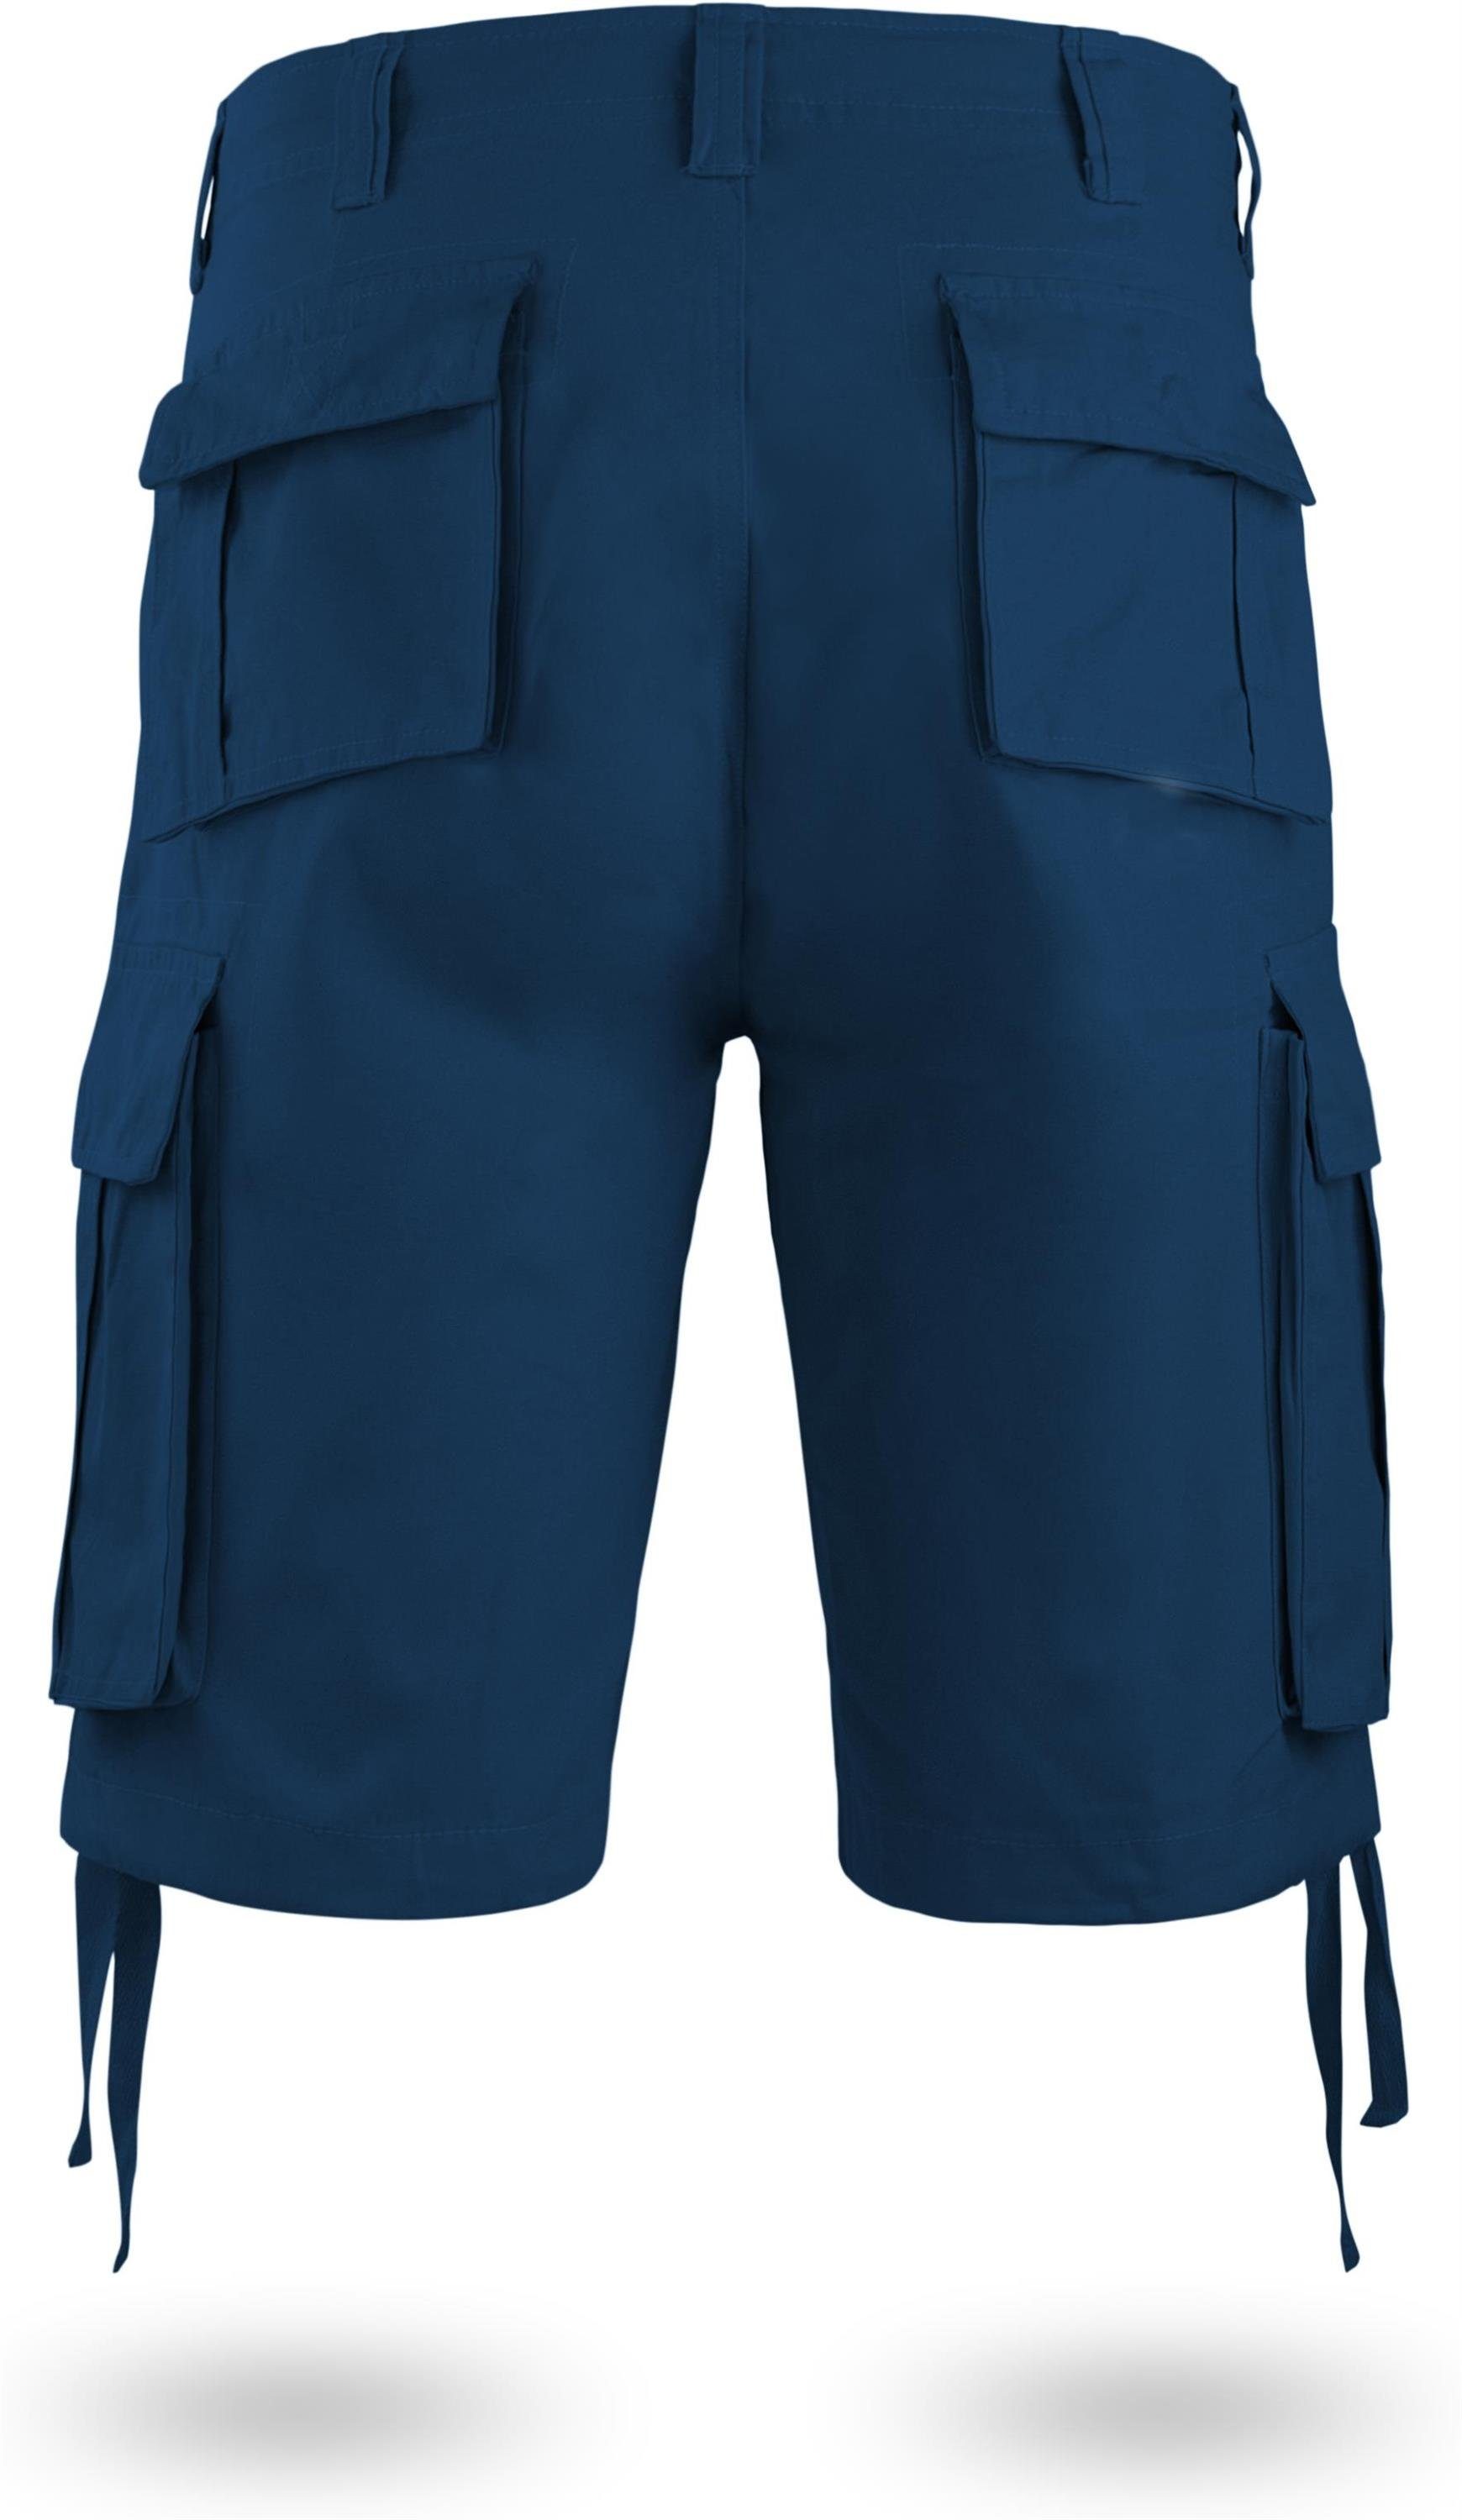 normani Bermudas Herren Shorts Kalahari Vintage 100% Sommershorts Navy Shorts Bio-Baumwolle aus mit Cargotaschen kurze